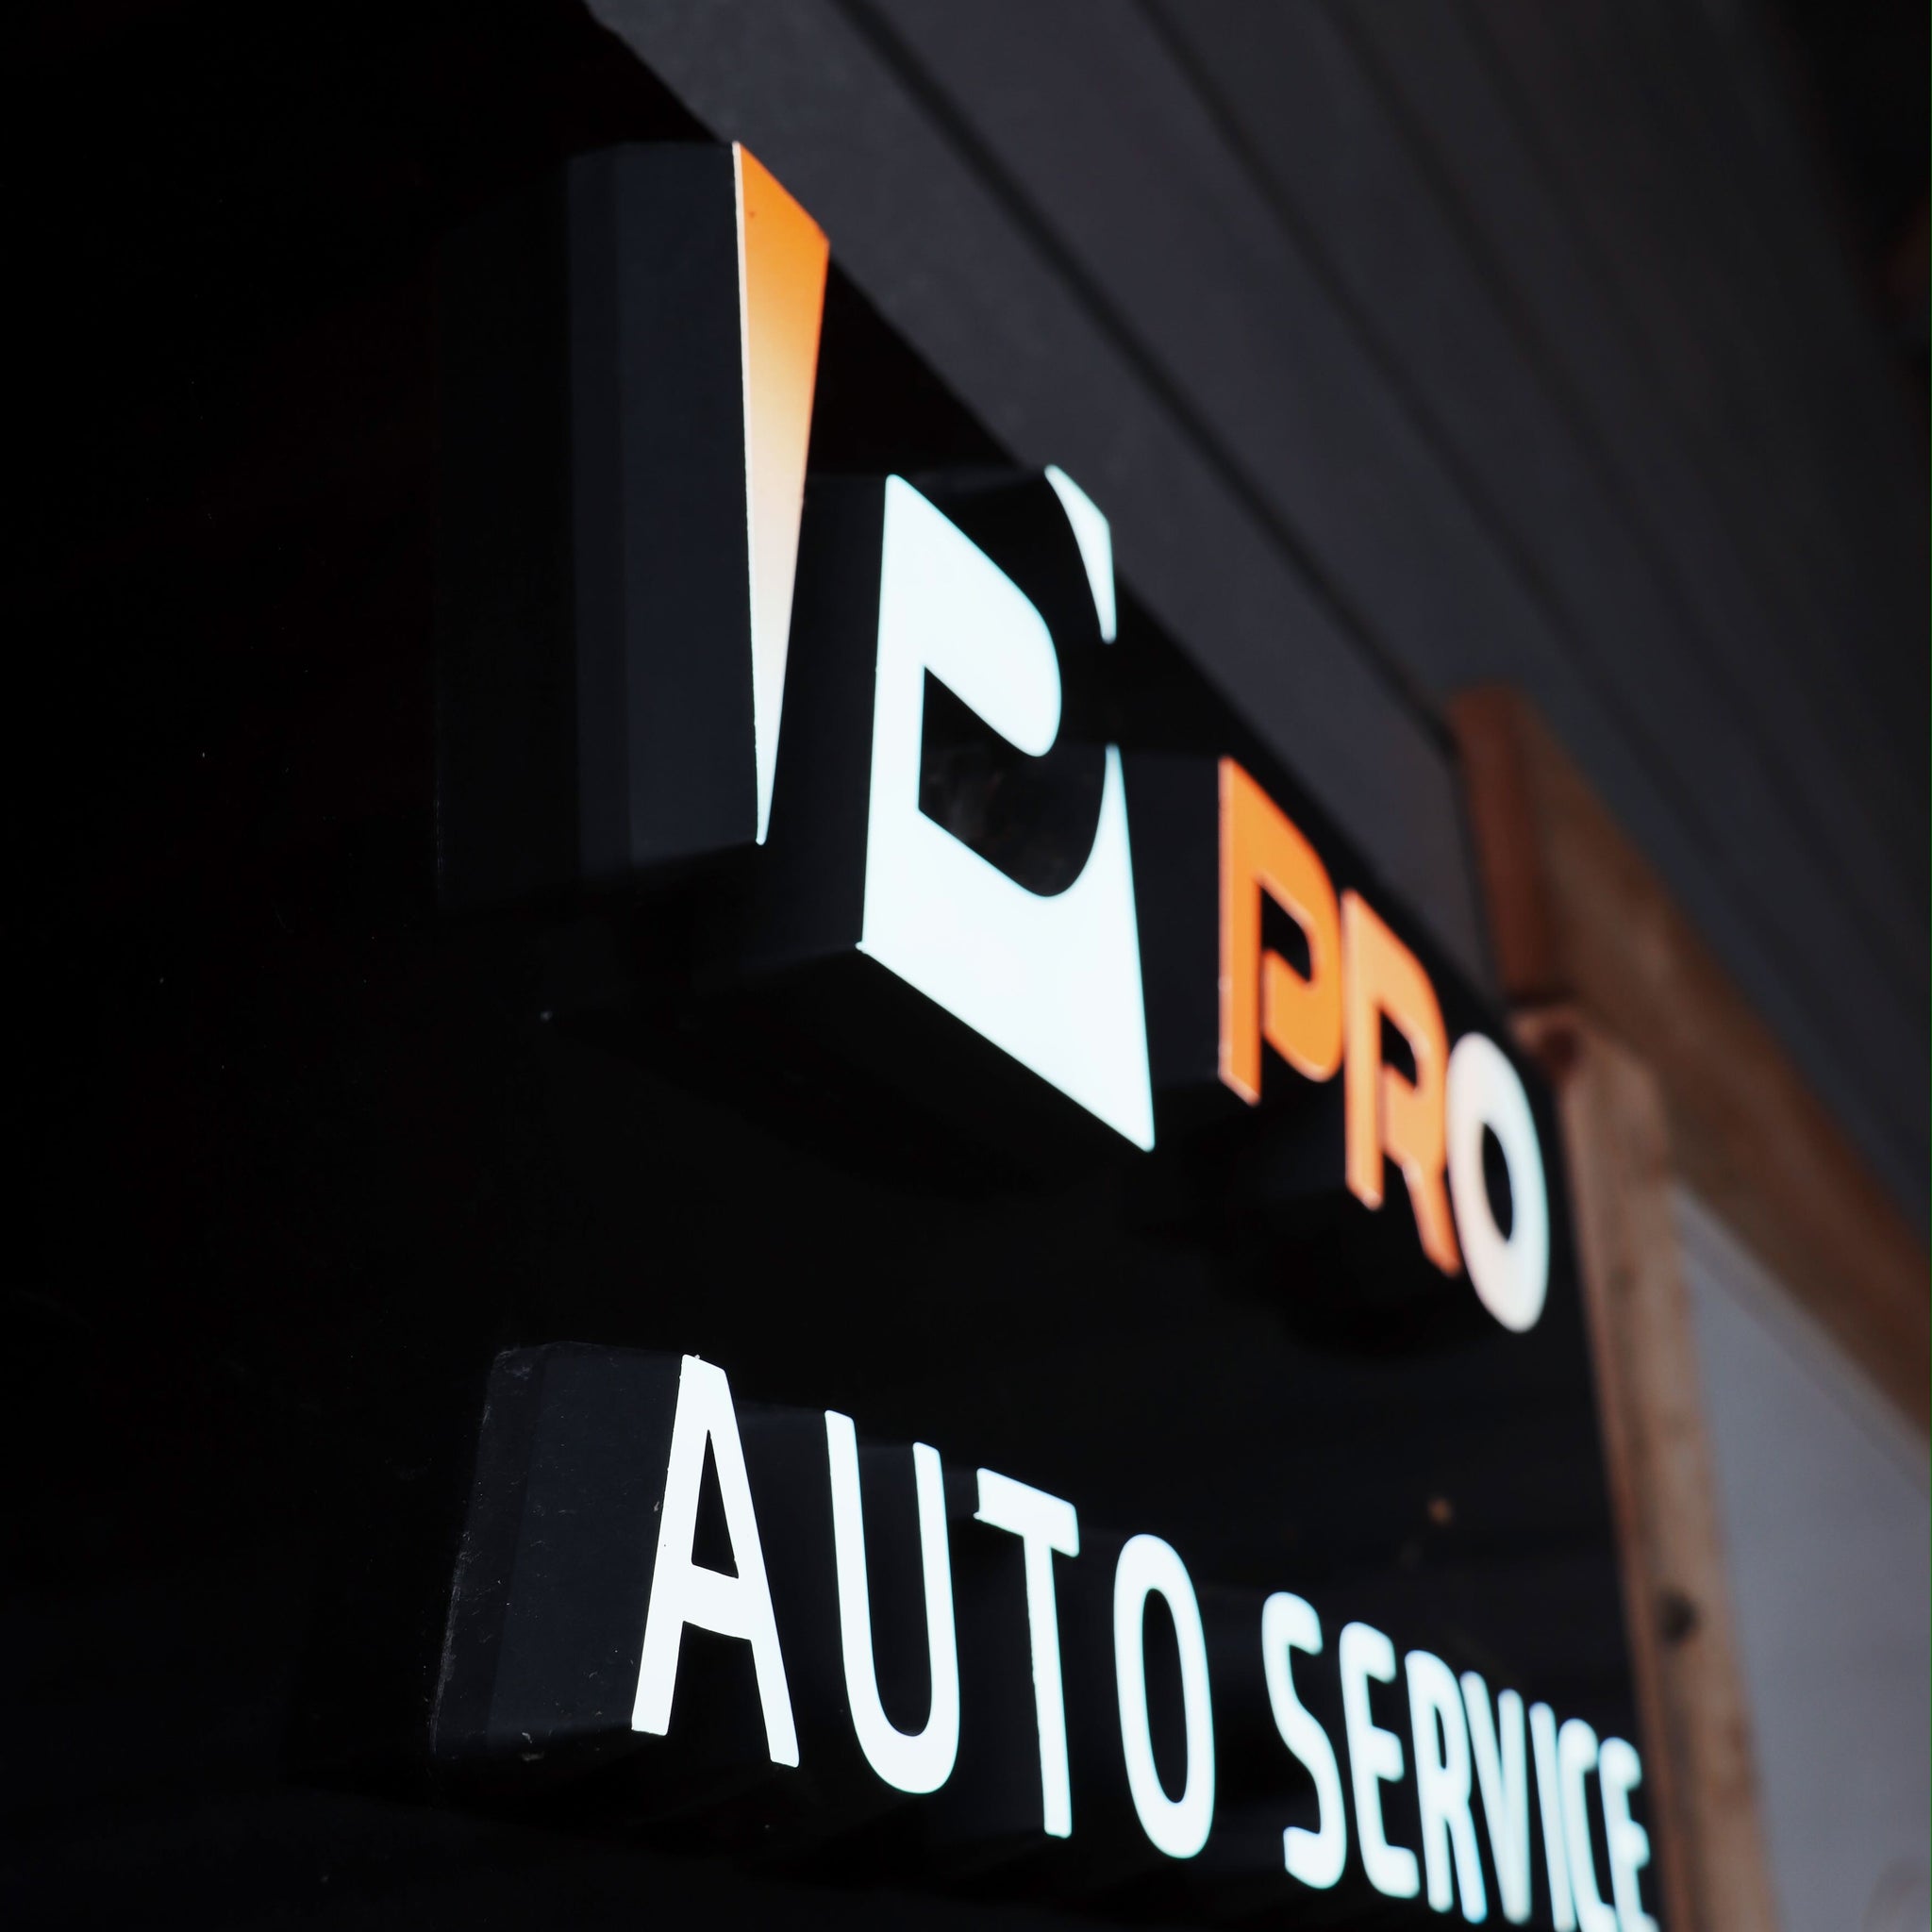 Pro Auto Service AS